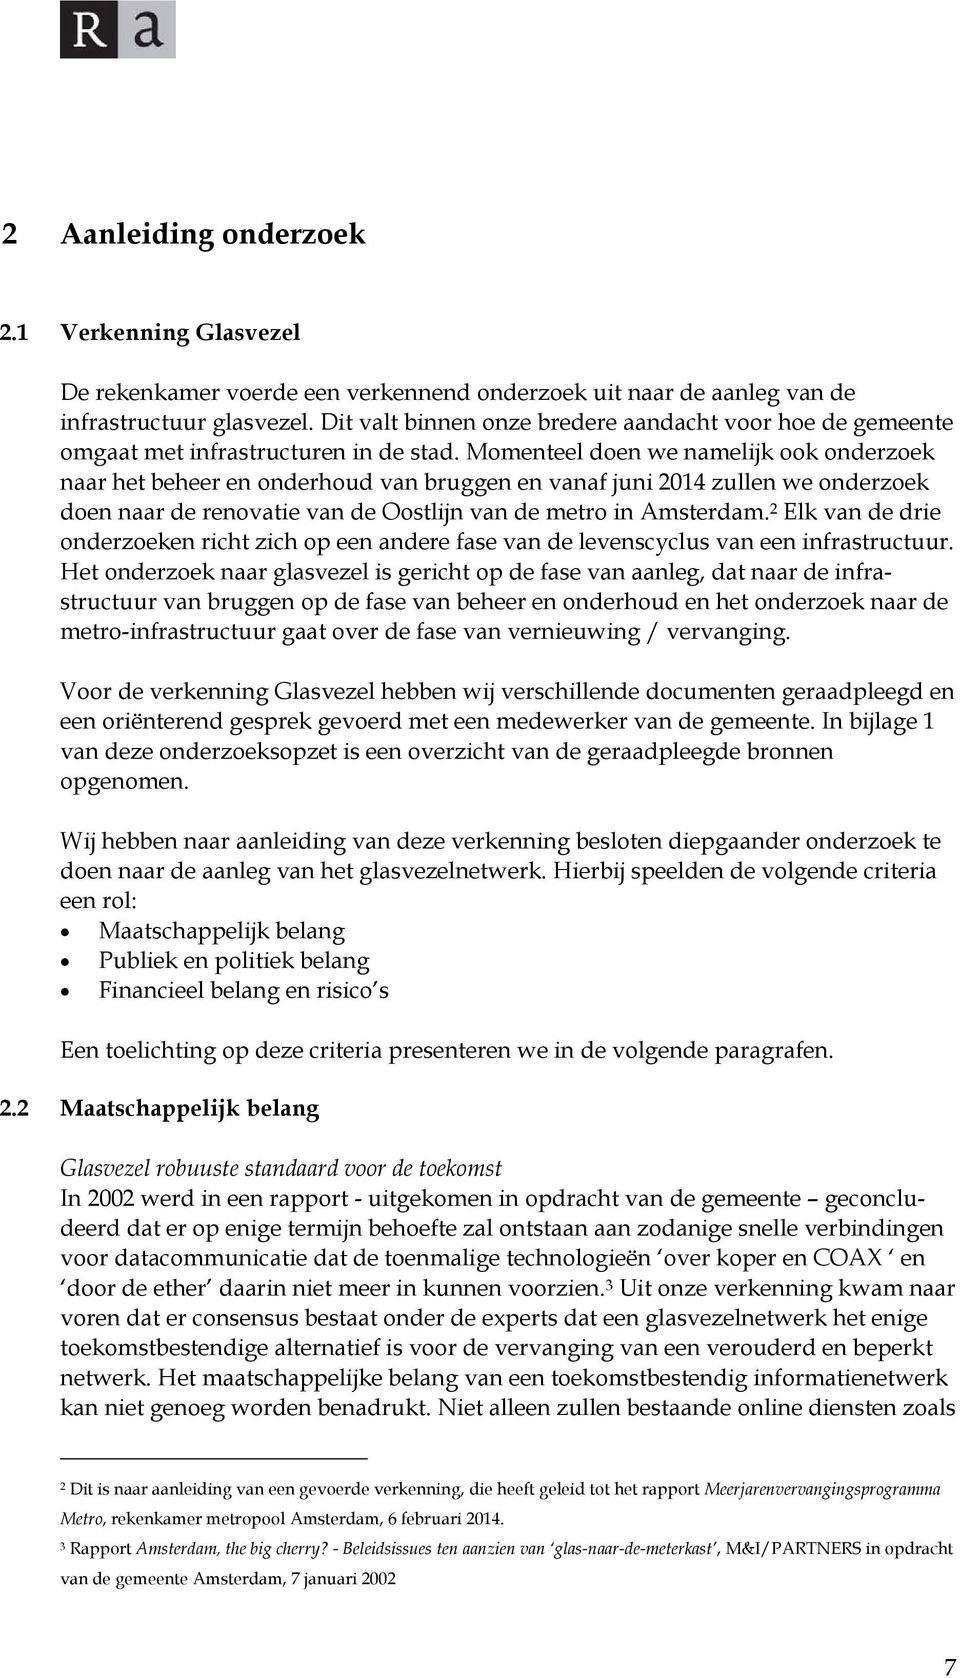 Momenteel doen we namelijk ook onderzoek naar het beheer en onderhoud van bruggen en vanaf juni 2014 zullen we onderzoek doen naar de renovatie van de Oostlijn van de metro in Amsterdam.